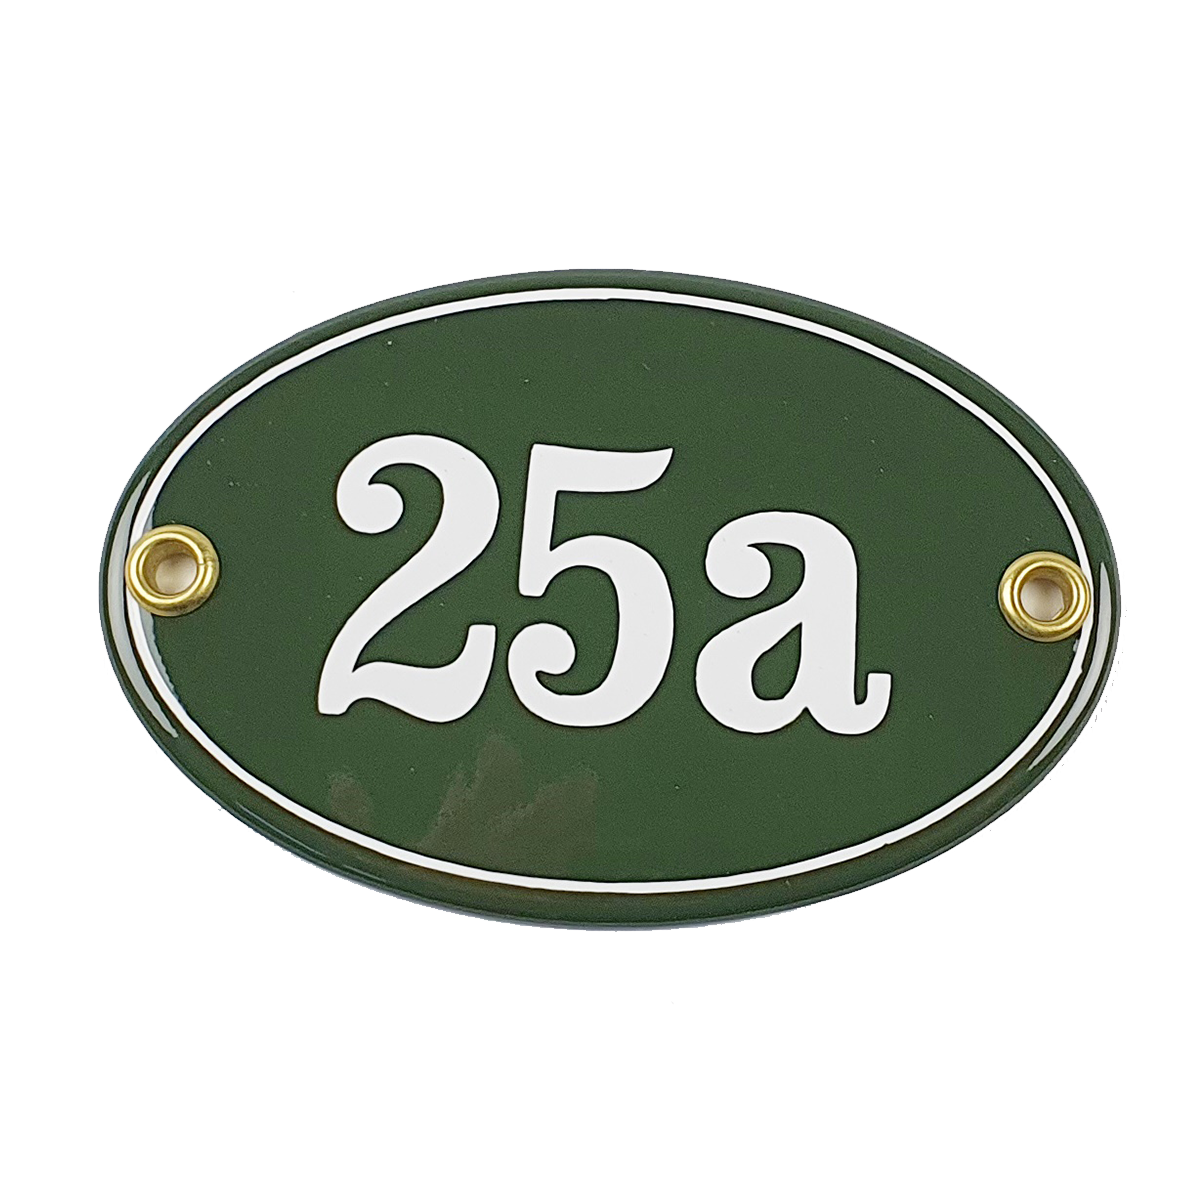 Ovale Hausnummer grün 25a